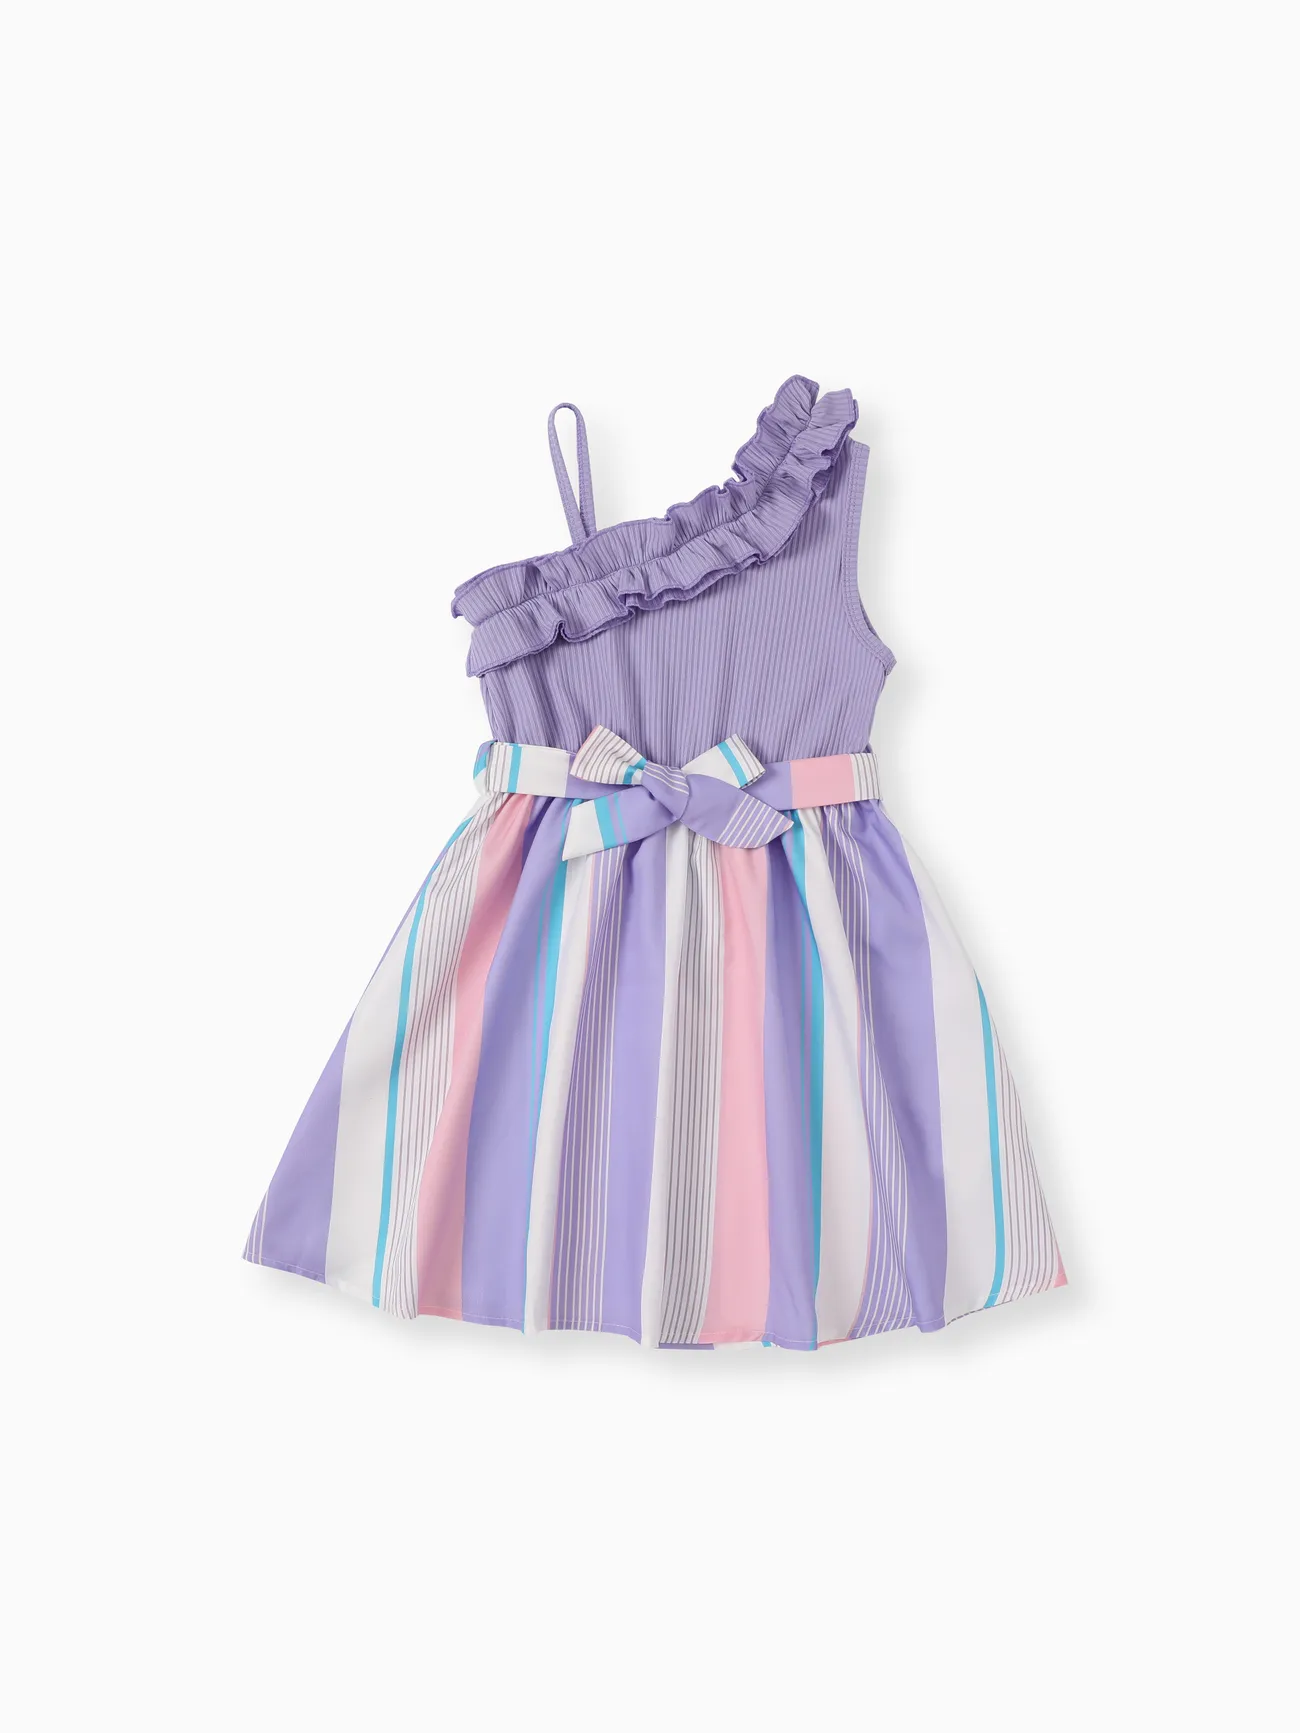 Enfants Fille Couture de tissus Rayures Robes Violet big image 1